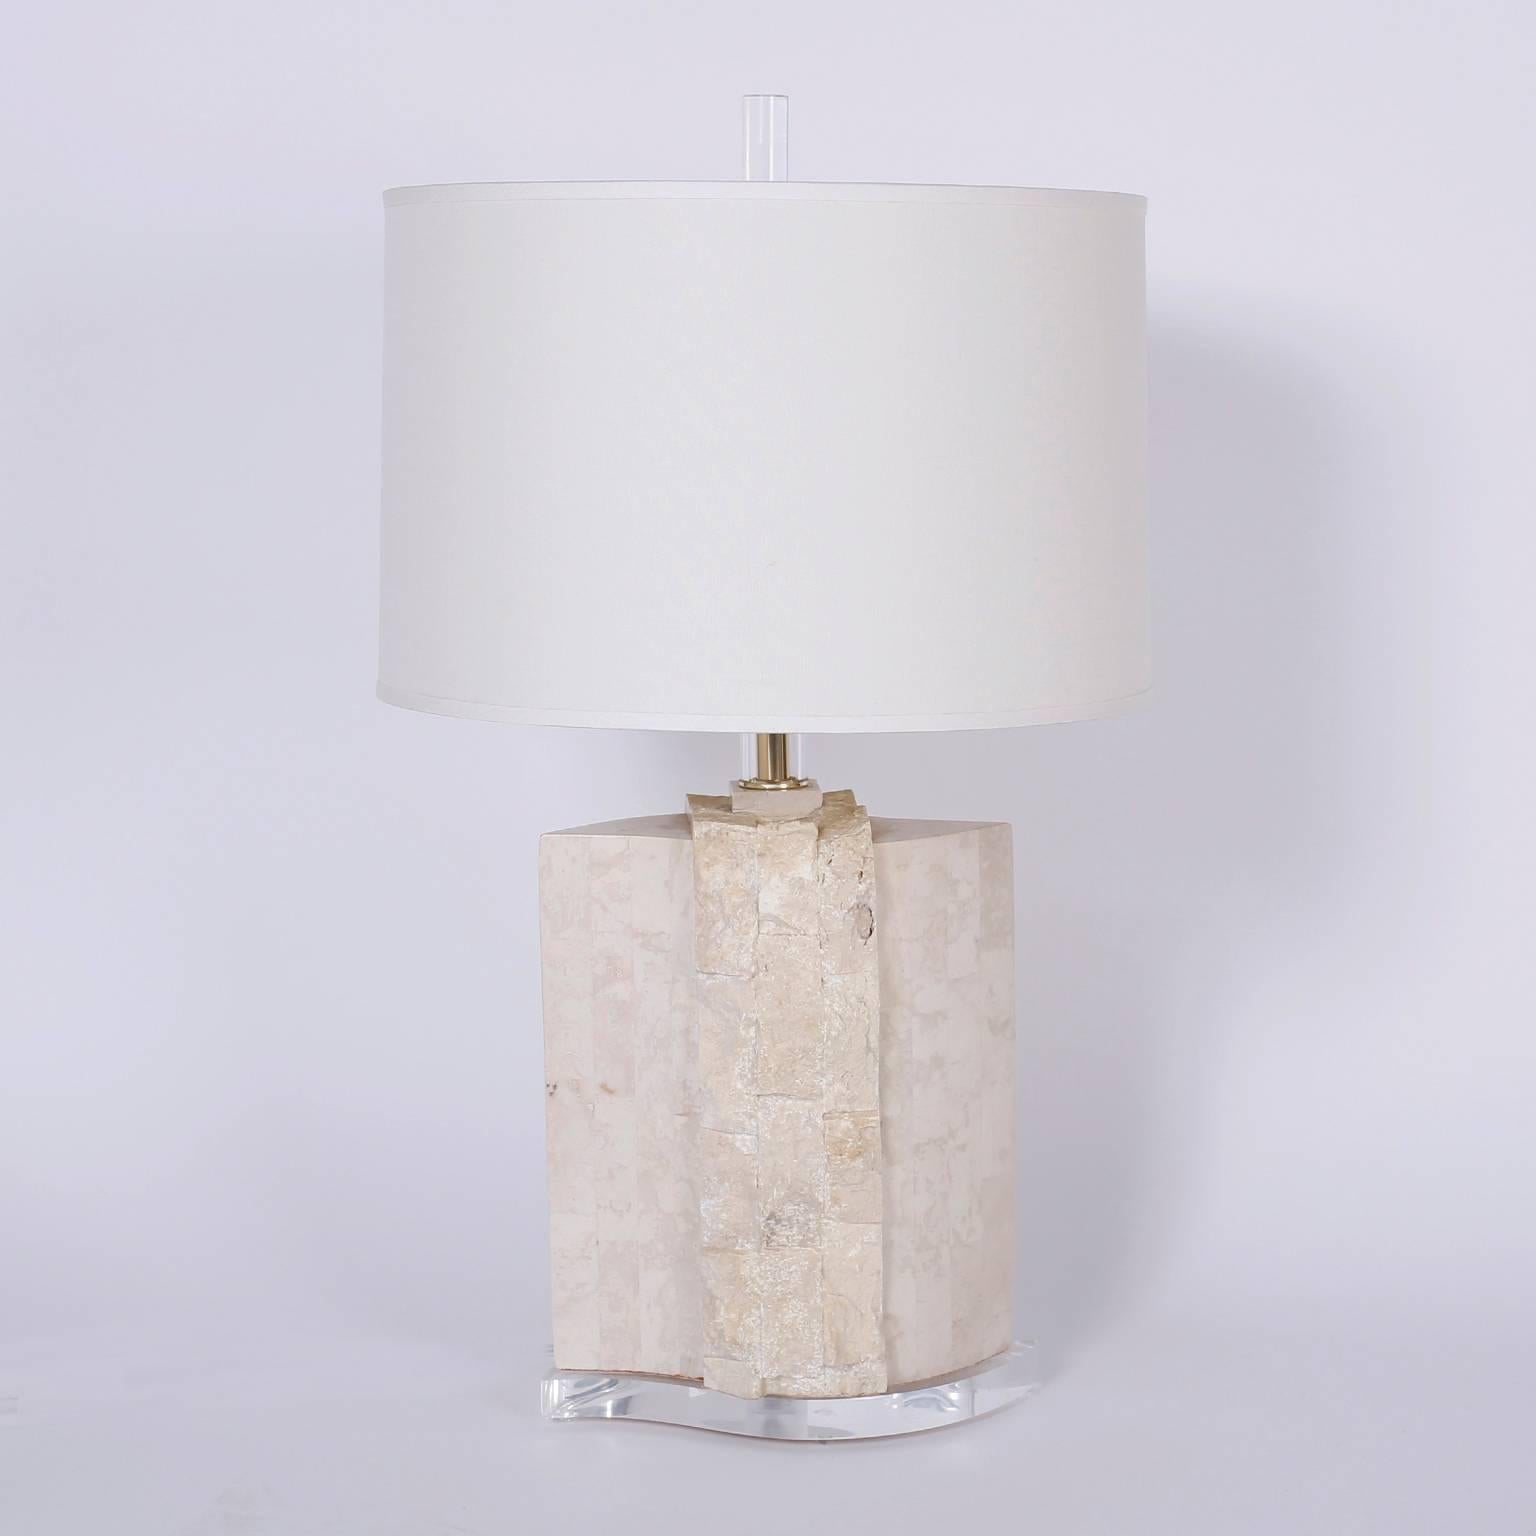 Paire de lampes de table chic du milieu du siècle dernier, fabriquées à partir de blocs de pierre à la fois polis et naturels. Avec des embouts, des tiges et des bases en Lucite.